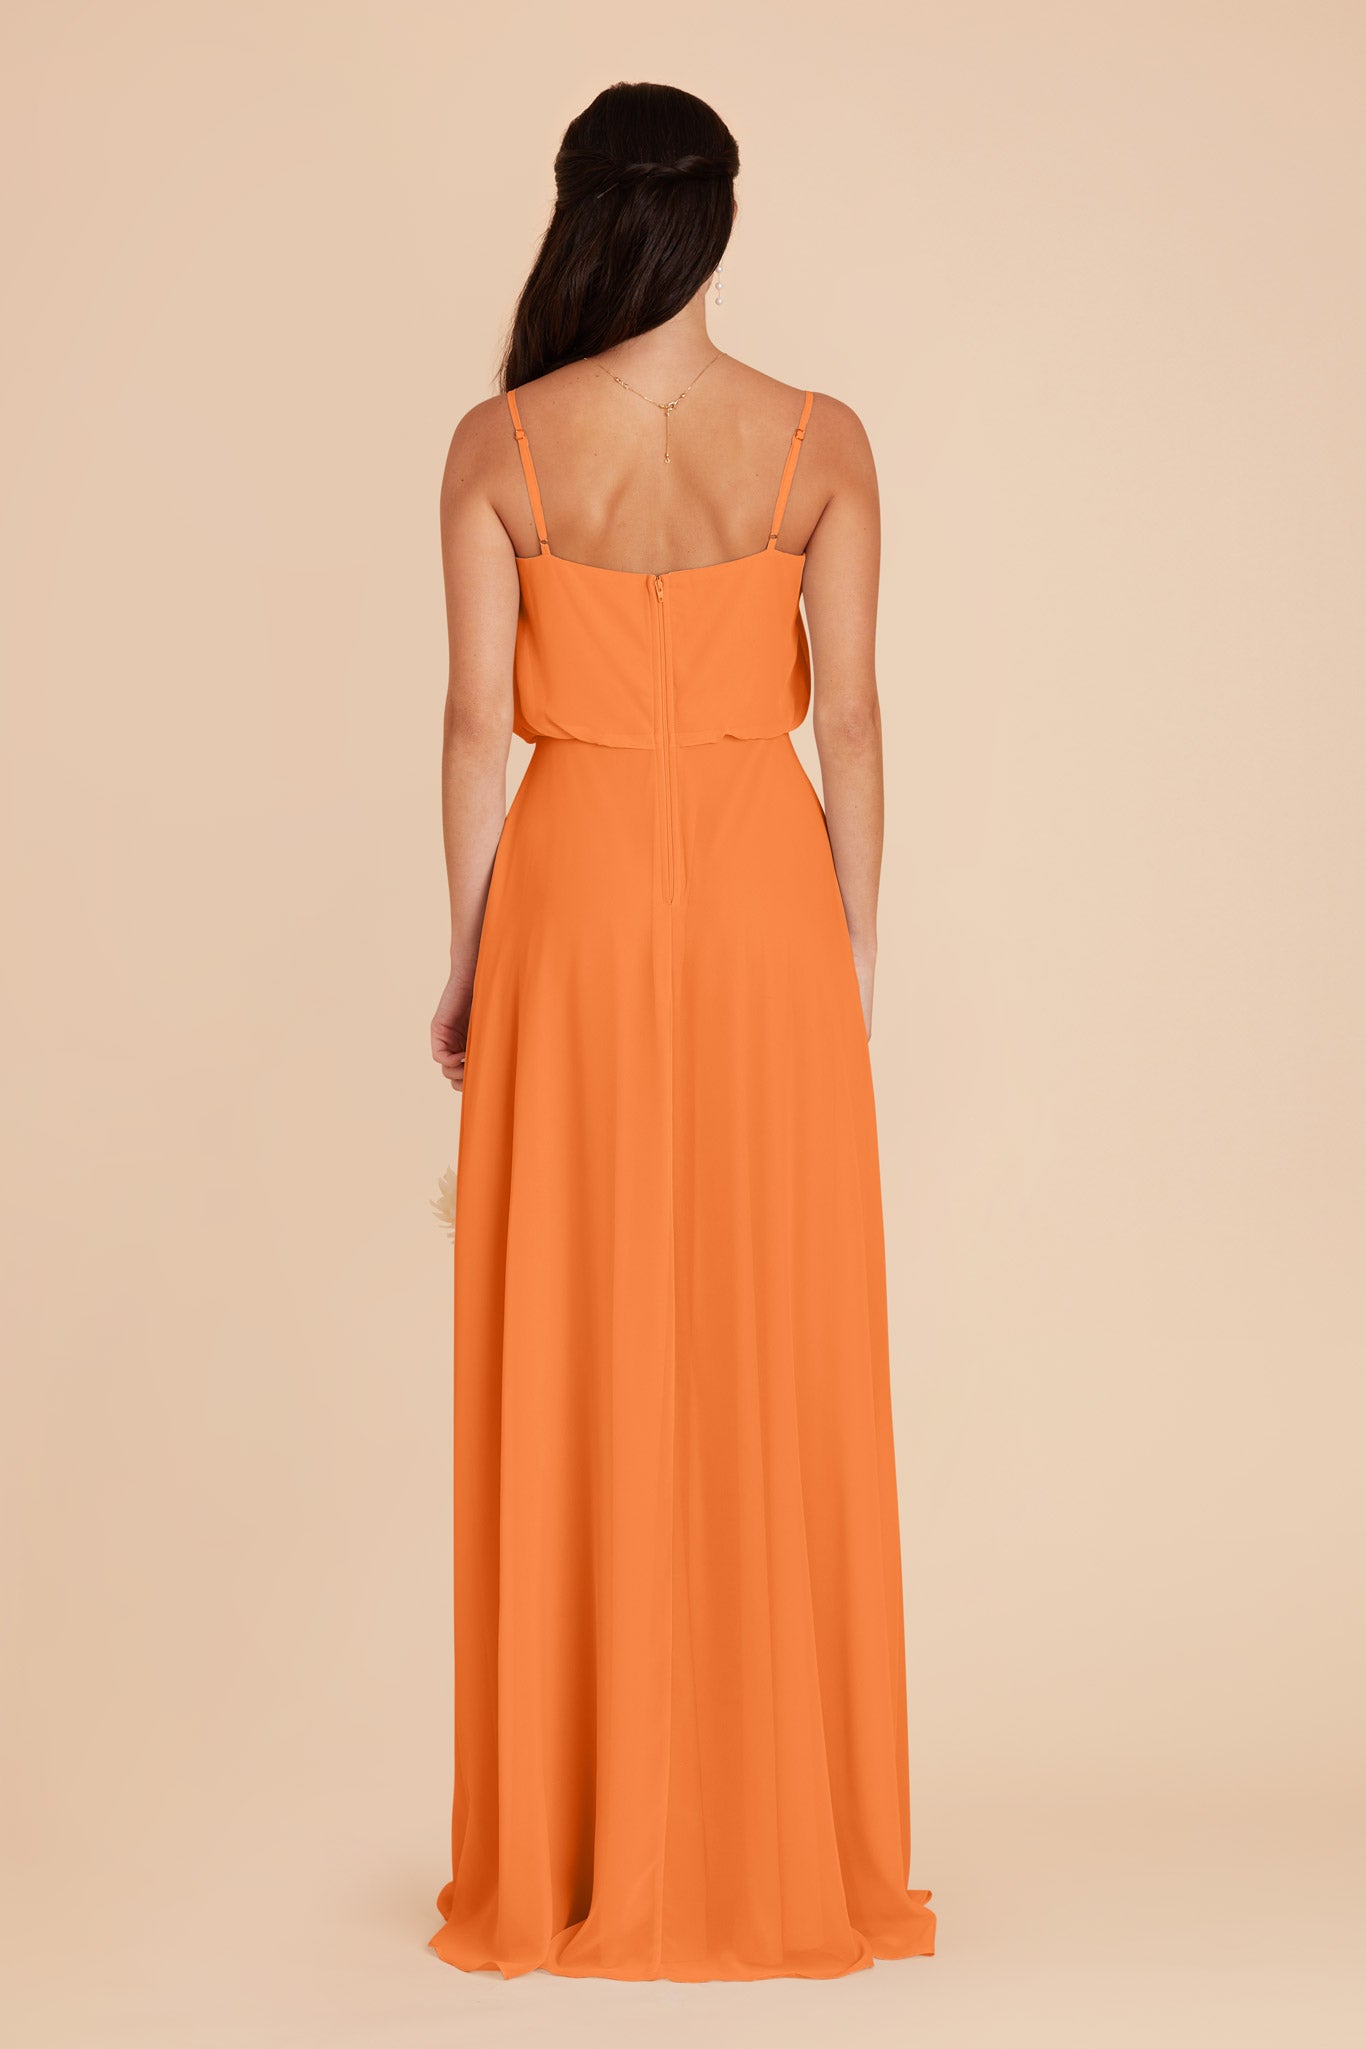 Apricot Gwennie Chiffon Dress by Birdy Grey